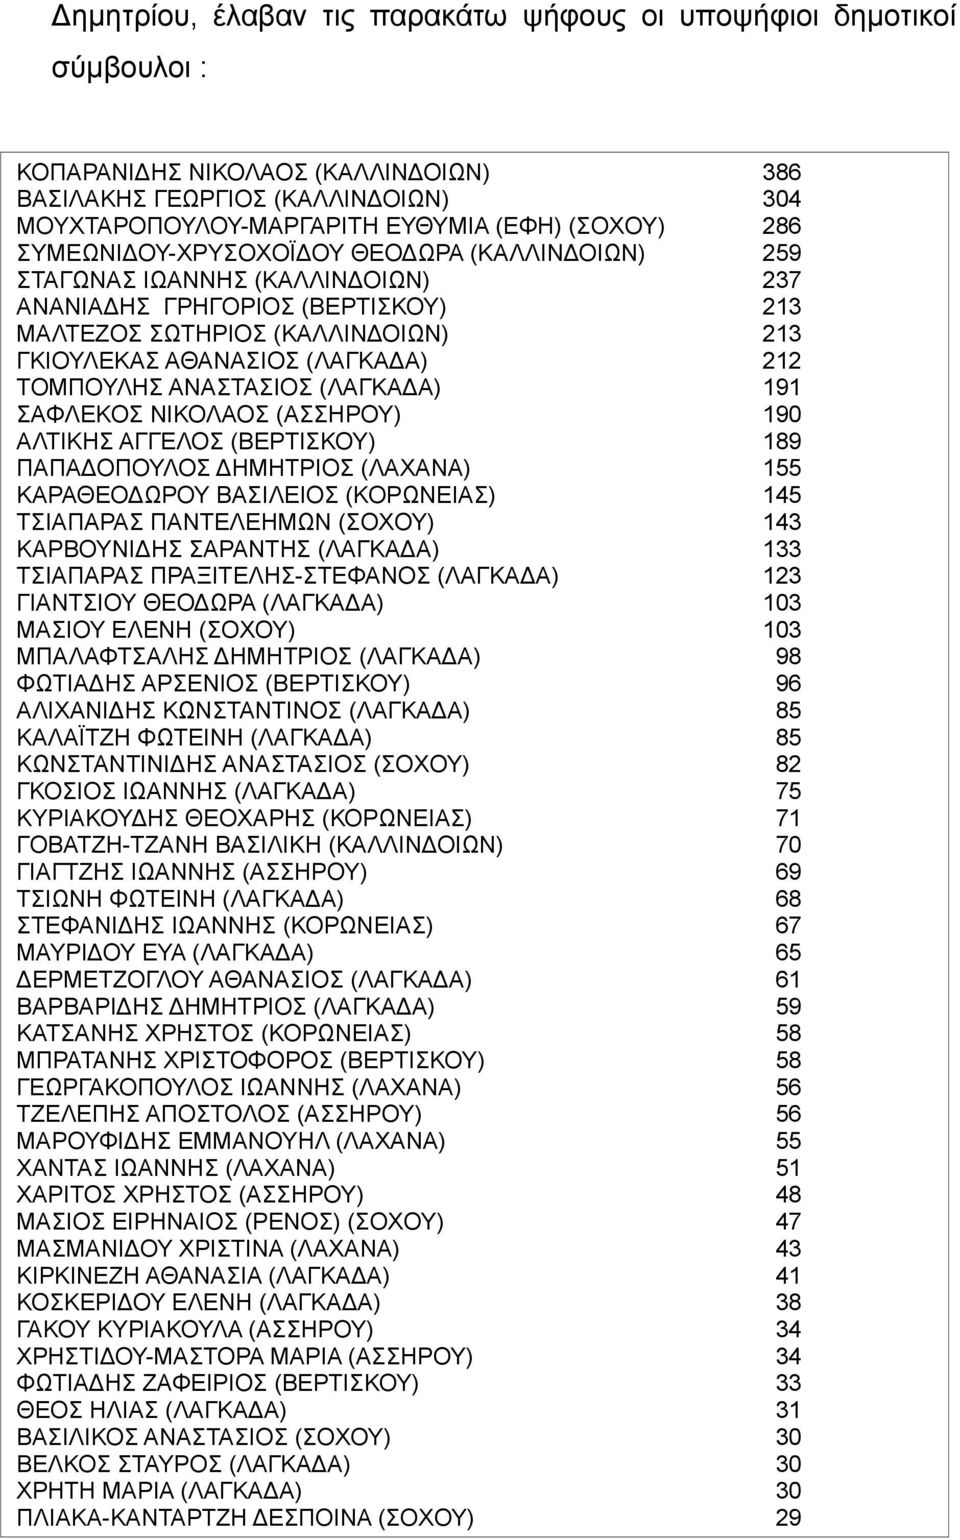 ΤΟΜΠΟΥΛΗΣ ΑΝΑΣΤΑΣΙΟΣ (ΛΑΓΚΑΔΑ) 191 ΣΑΦΛΕΚΟΣ ΝΙΚΟΛΑΟΣ (ΑΣΣΗΡΟΥ) 190 ΑΛΤΙΚΗΣ ΑΓΓΕΛΟΣ (ΒΕΡΤΙΣΚΟΥ) 189 ΠΑΠΑΔΟΠΟΥΛΟΣ ΔΗΜΗΤΡΙΟΣ (ΛΑΧΑΝΑ) 155 ΚΑΡΑΘΕΟΔΩΡΟΥ ΒΑΣΙΛΕΙΟΣ (ΚΟΡΩΝΕΙΑΣ) 145 ΤΣΙΑΠΑΡΑΣ ΠΑΝΤΕΛΕΗΜΩΝ